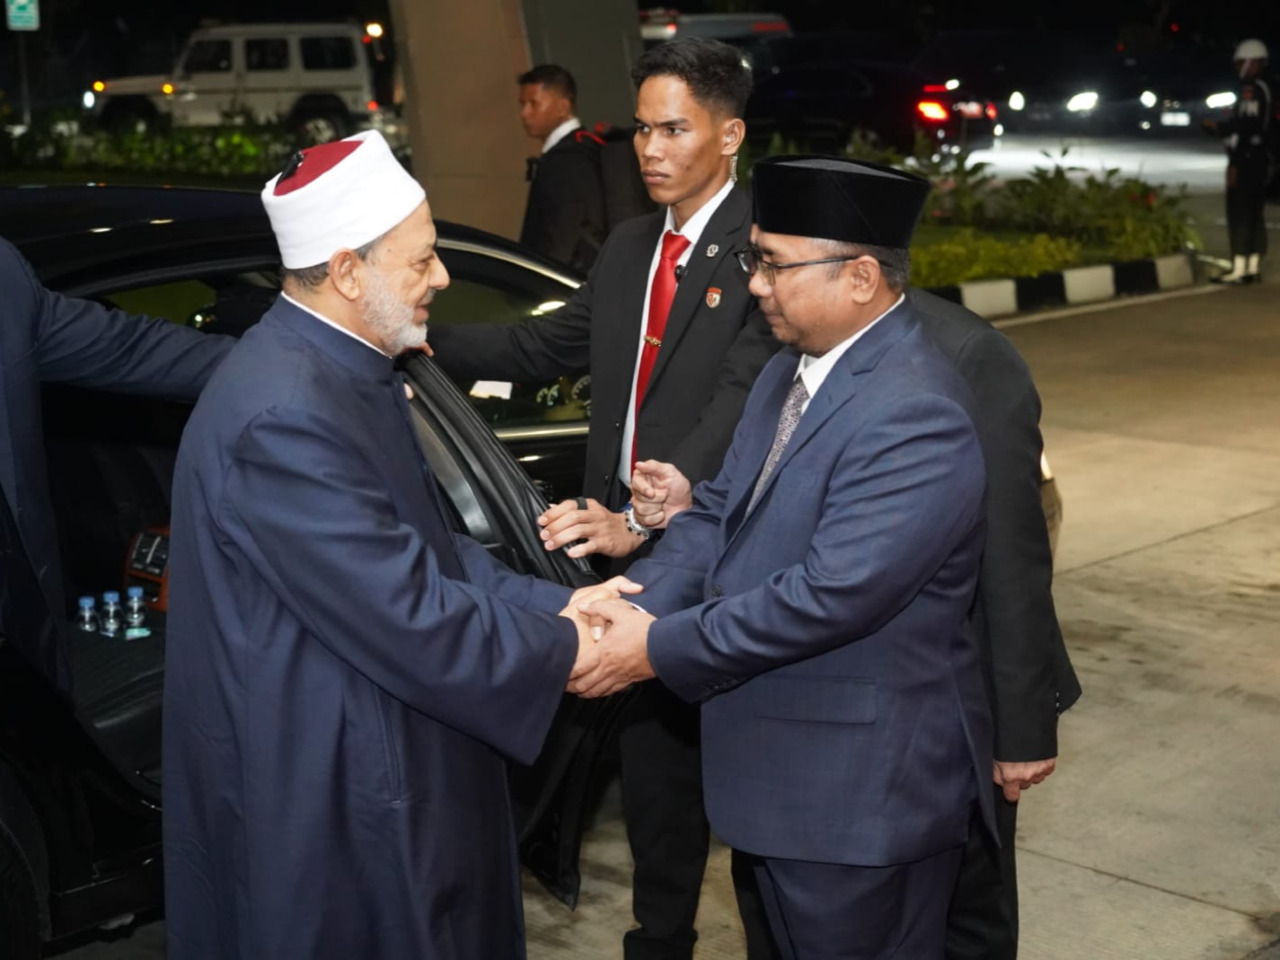 Sambut Kedatangan Grand Syekh Al Azhar, Menag: Kunjungan Penuh Makna bagi Indonesia

